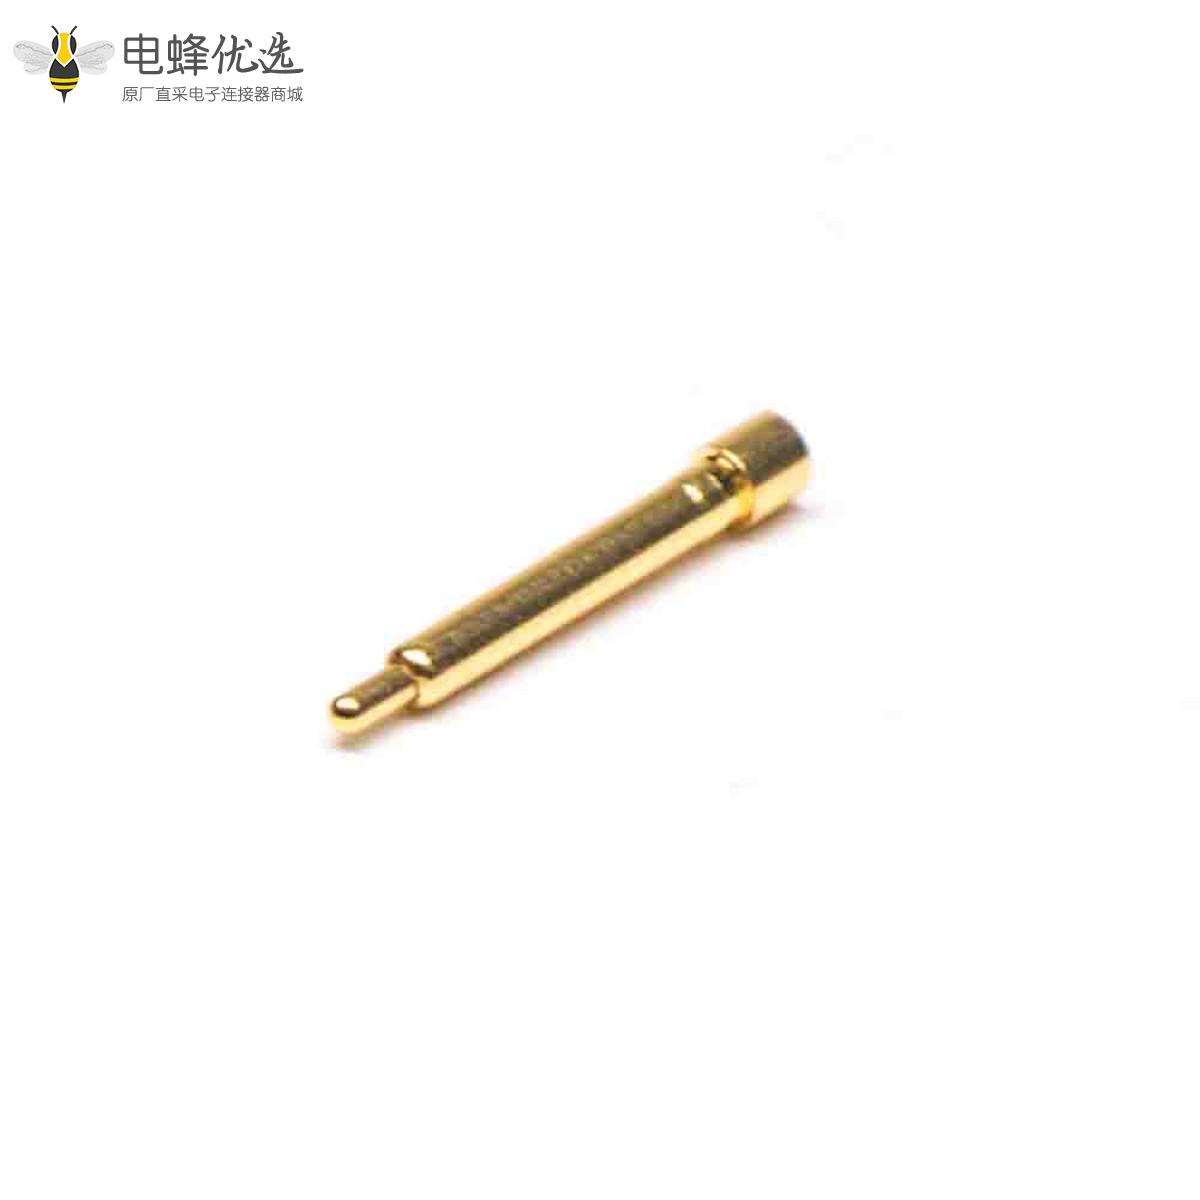 单头Pogo Pin连接器侧放式黄铜焊接异形系列单芯镀金